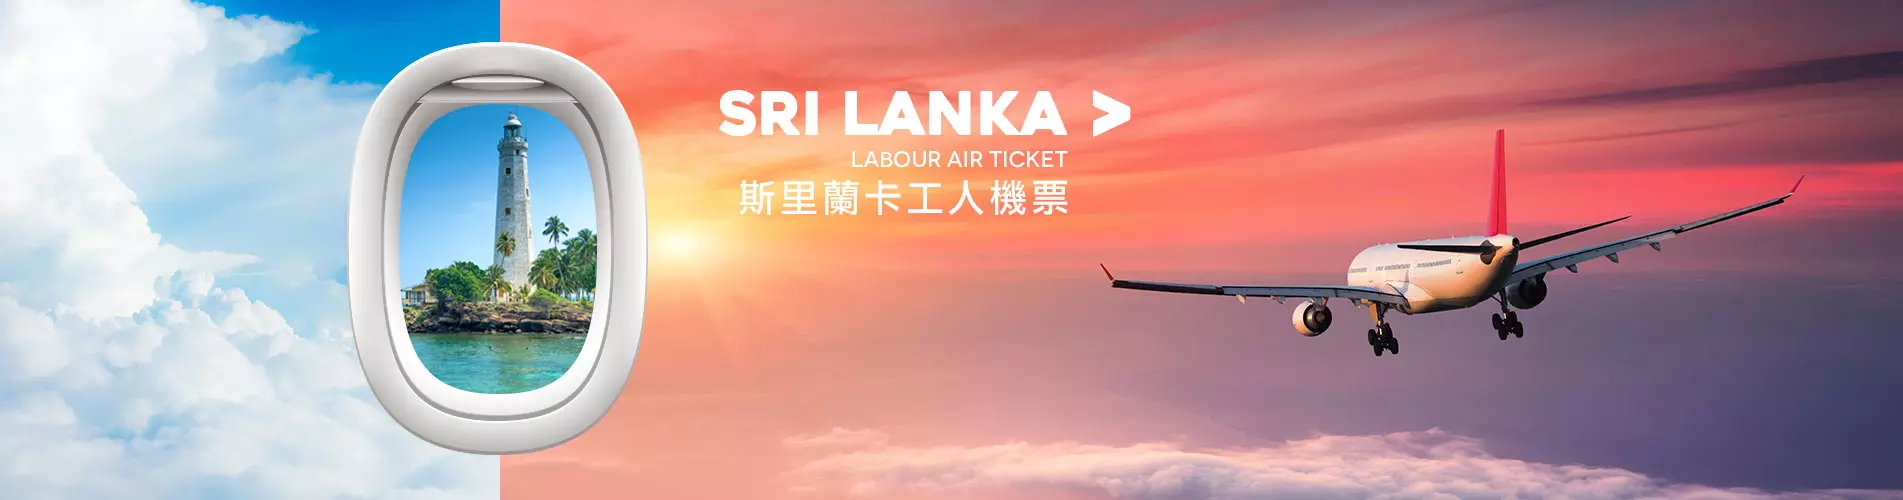 僱傭機票優惠 - 斯里蘭卡工人機票